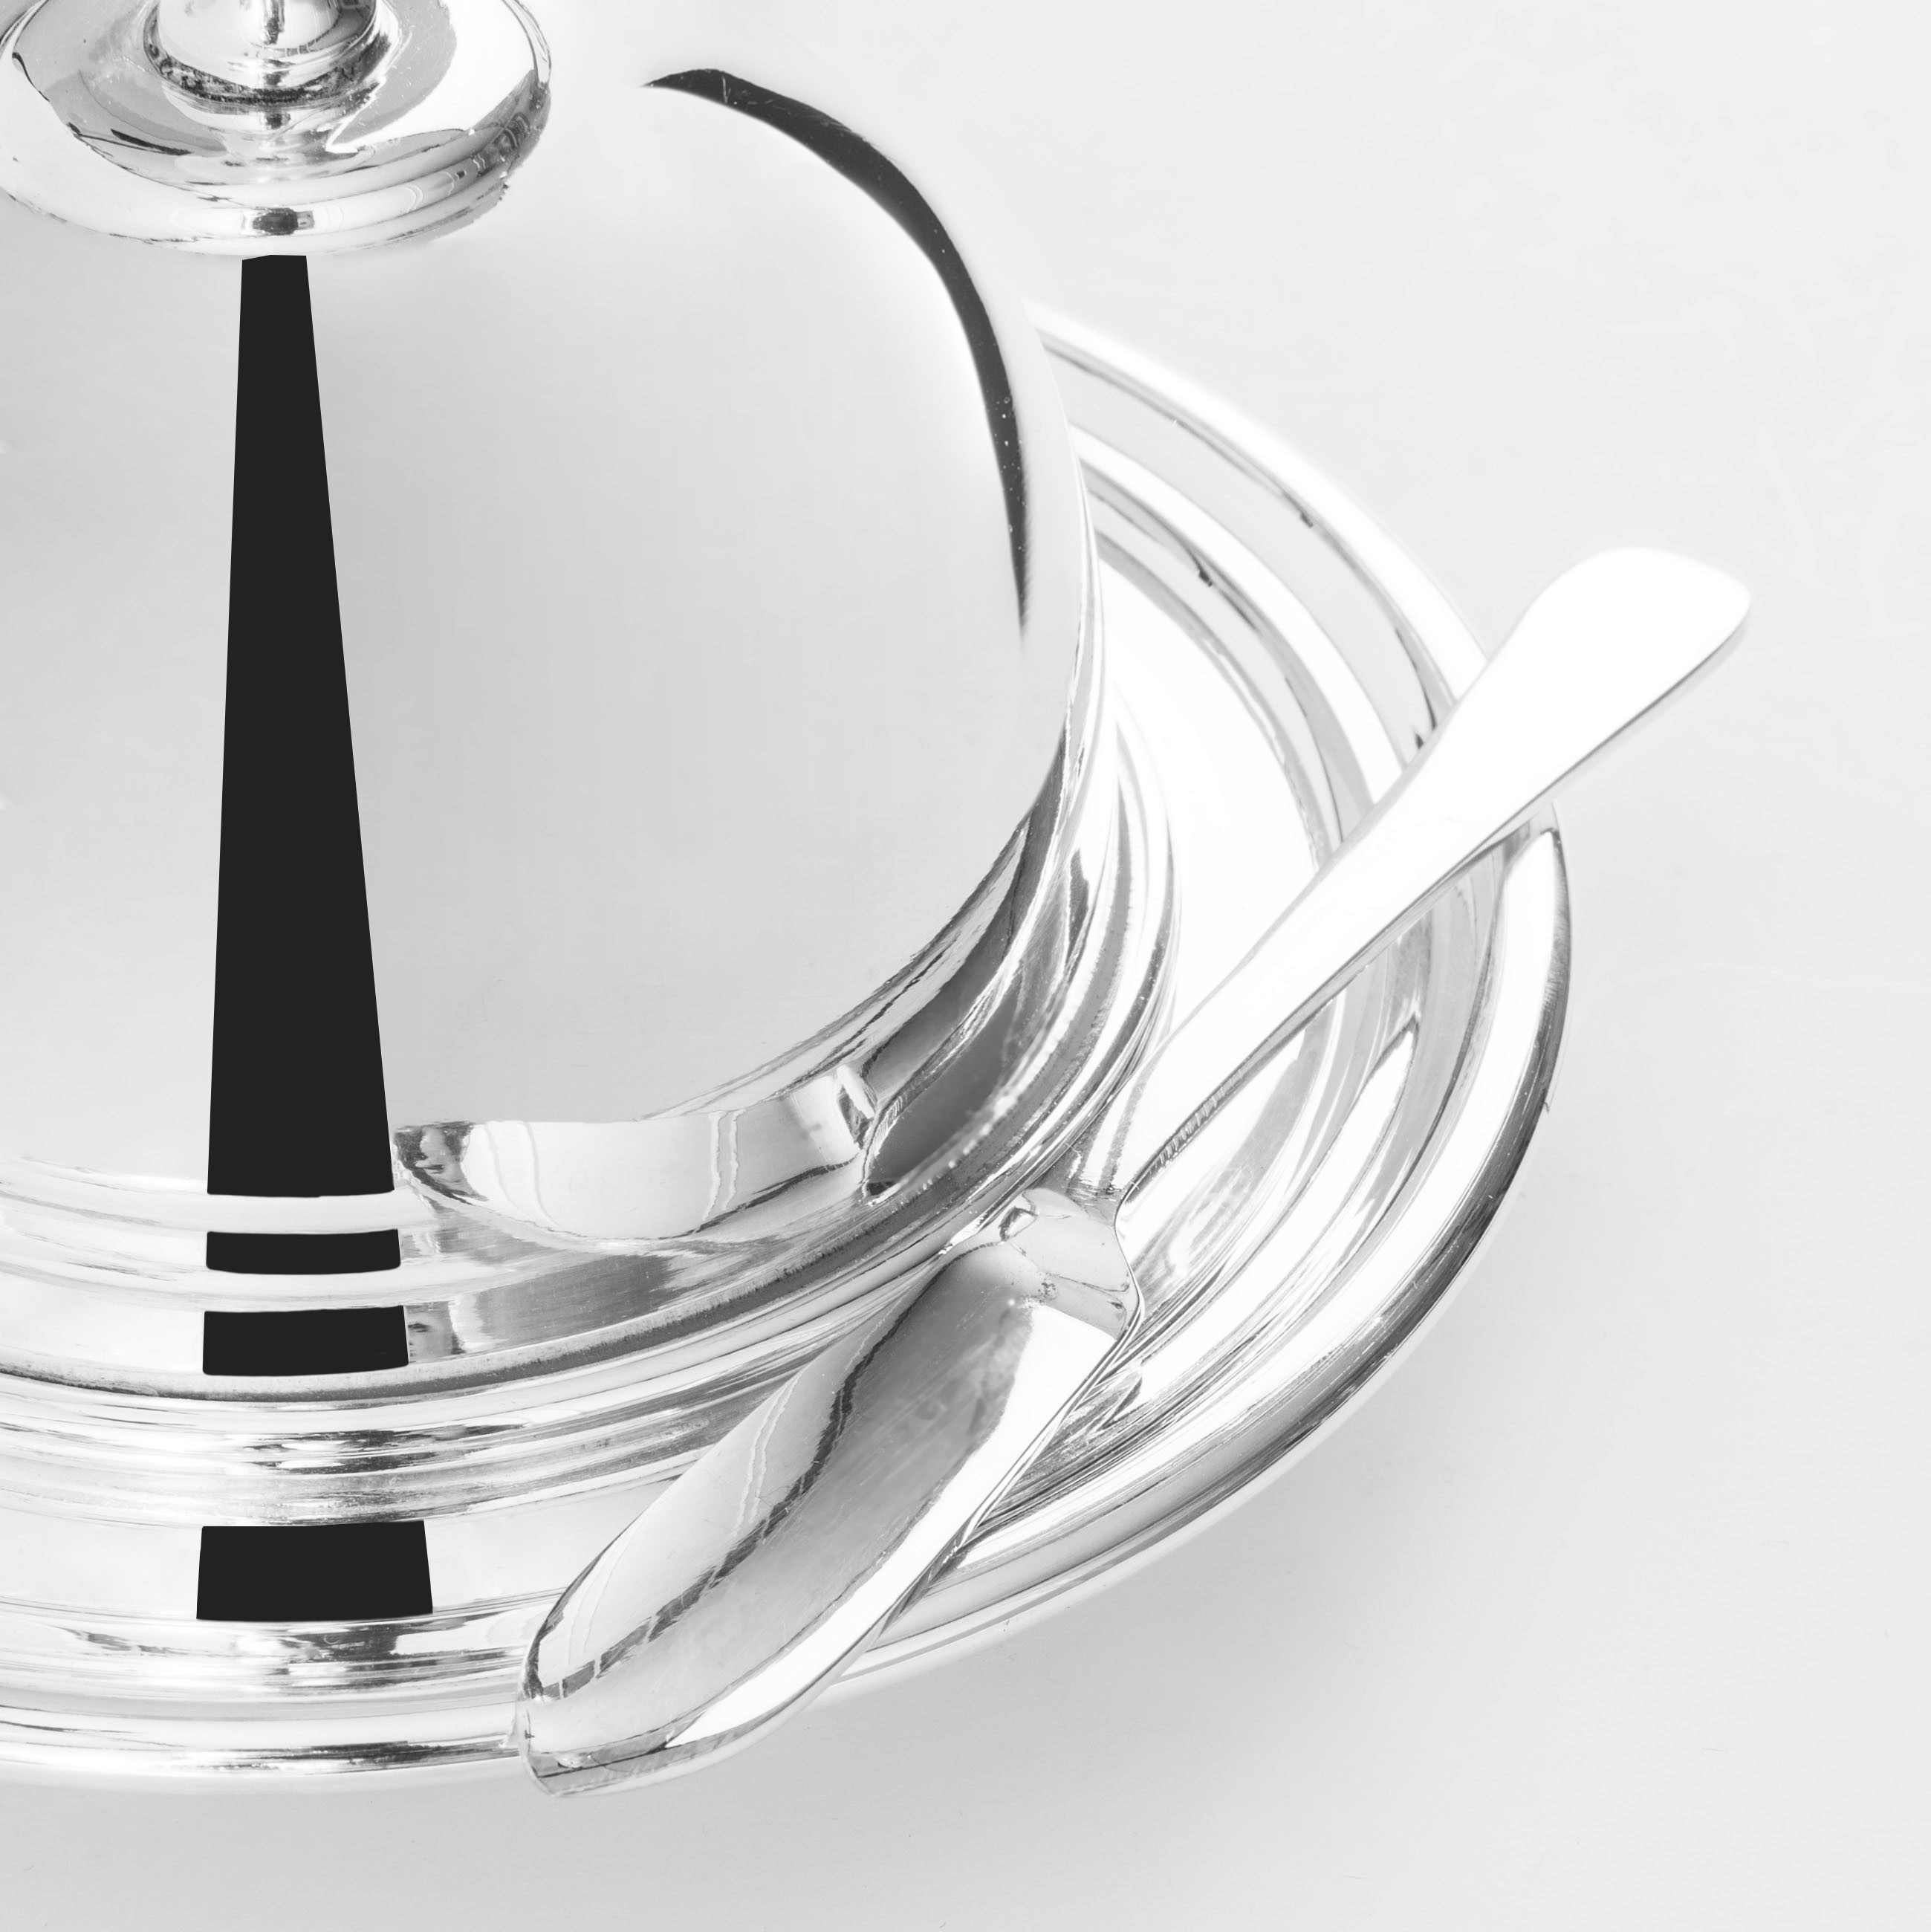 Масленка, 14х10 см, с ножом, латунь/стекло, круглая, Lux brass изображение № 2